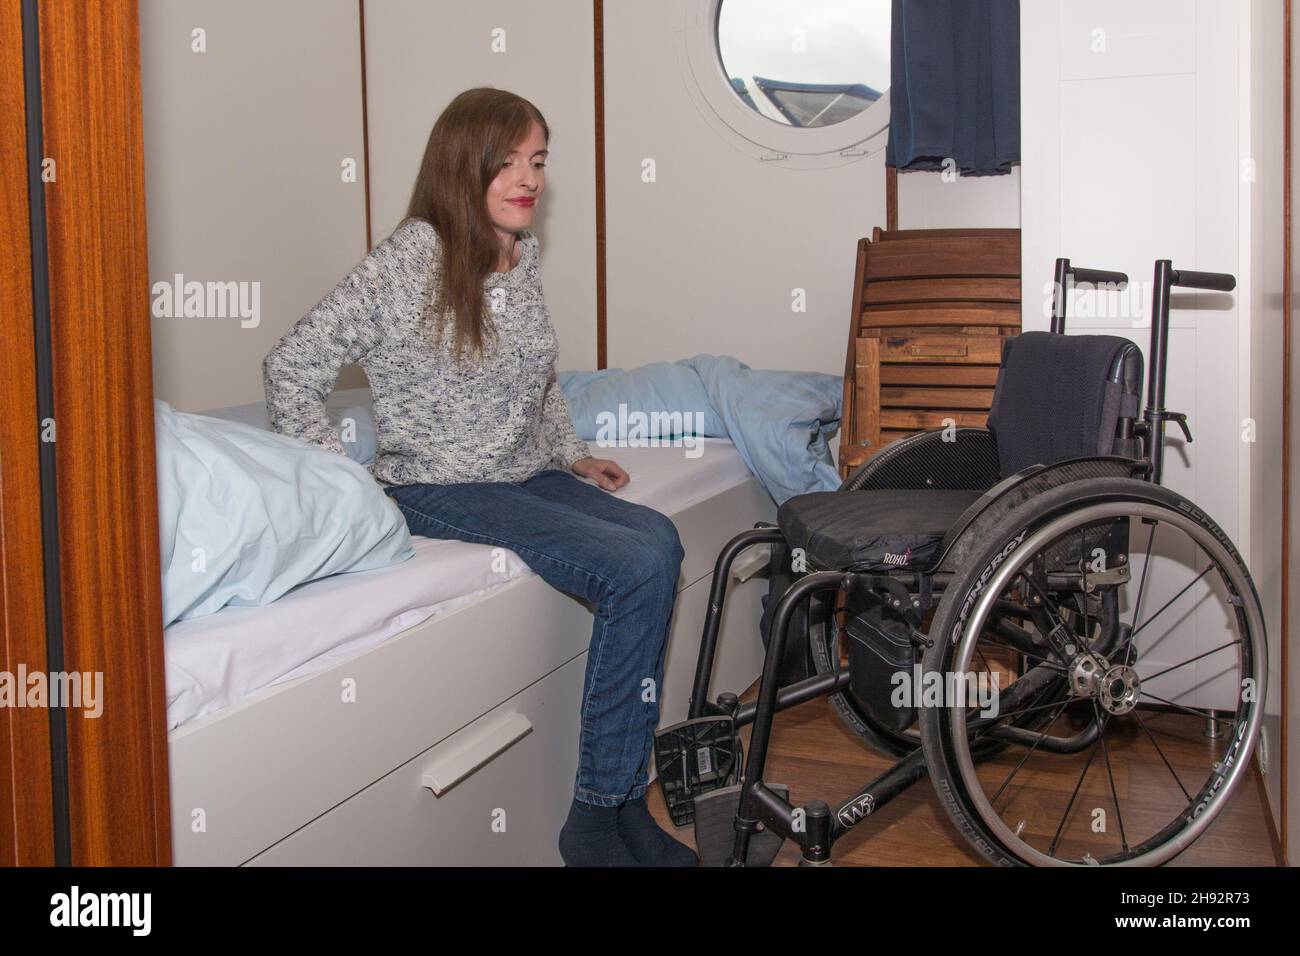 Frau im Rollstuhl auf Hausboot setzt sich um ins Bett Stock Photo